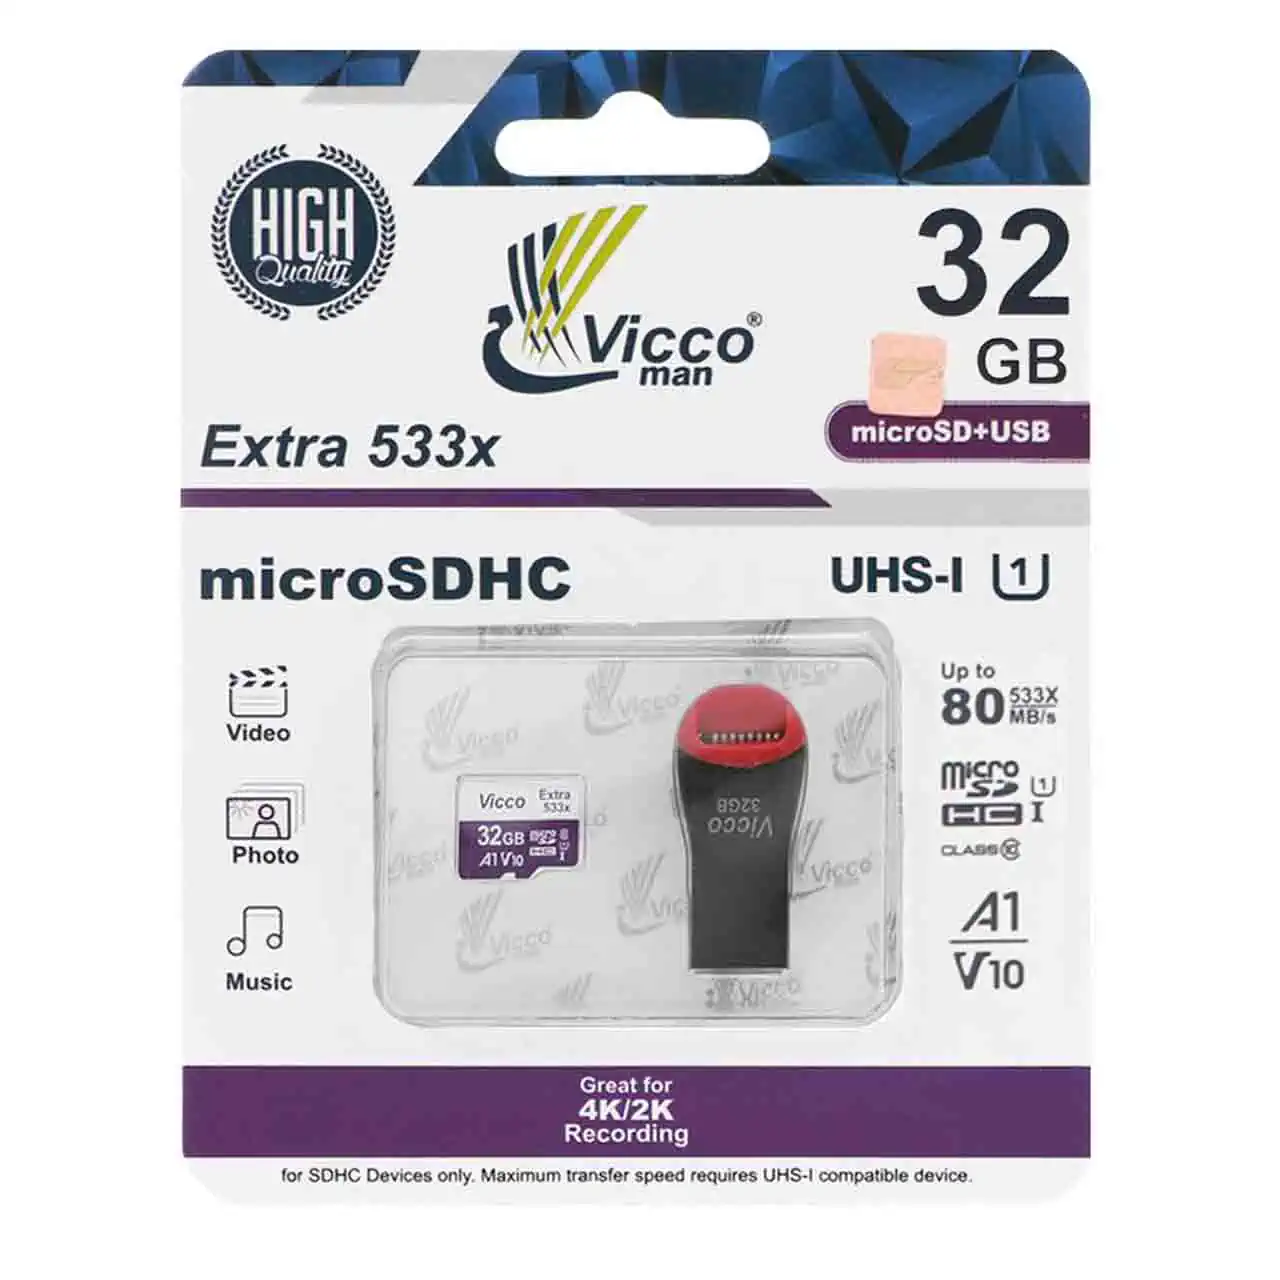 کارت حافظه MicroSDHC & USB ویکومن مدل Extra 533X UHS-I U1 کلاس 10 سرعت 80MB/s ظرفیت 32 گیگابایت